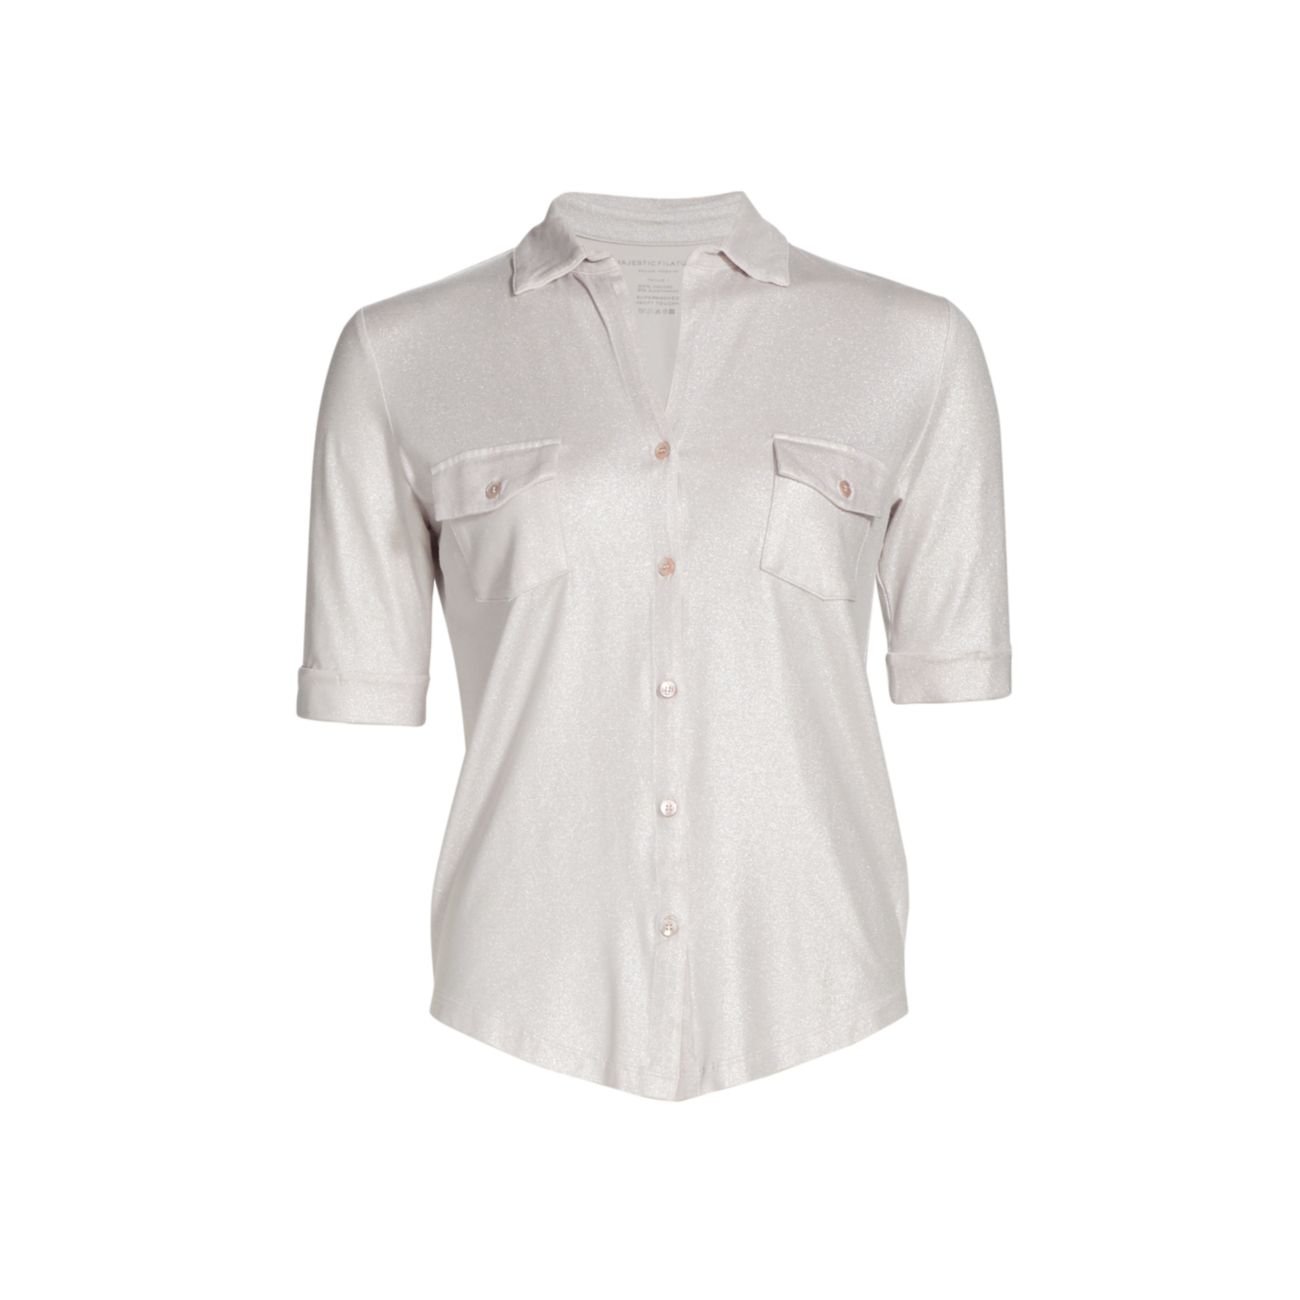 Рубашка с металлическими пуговицами Soft Touch спереди Majestic Filatures